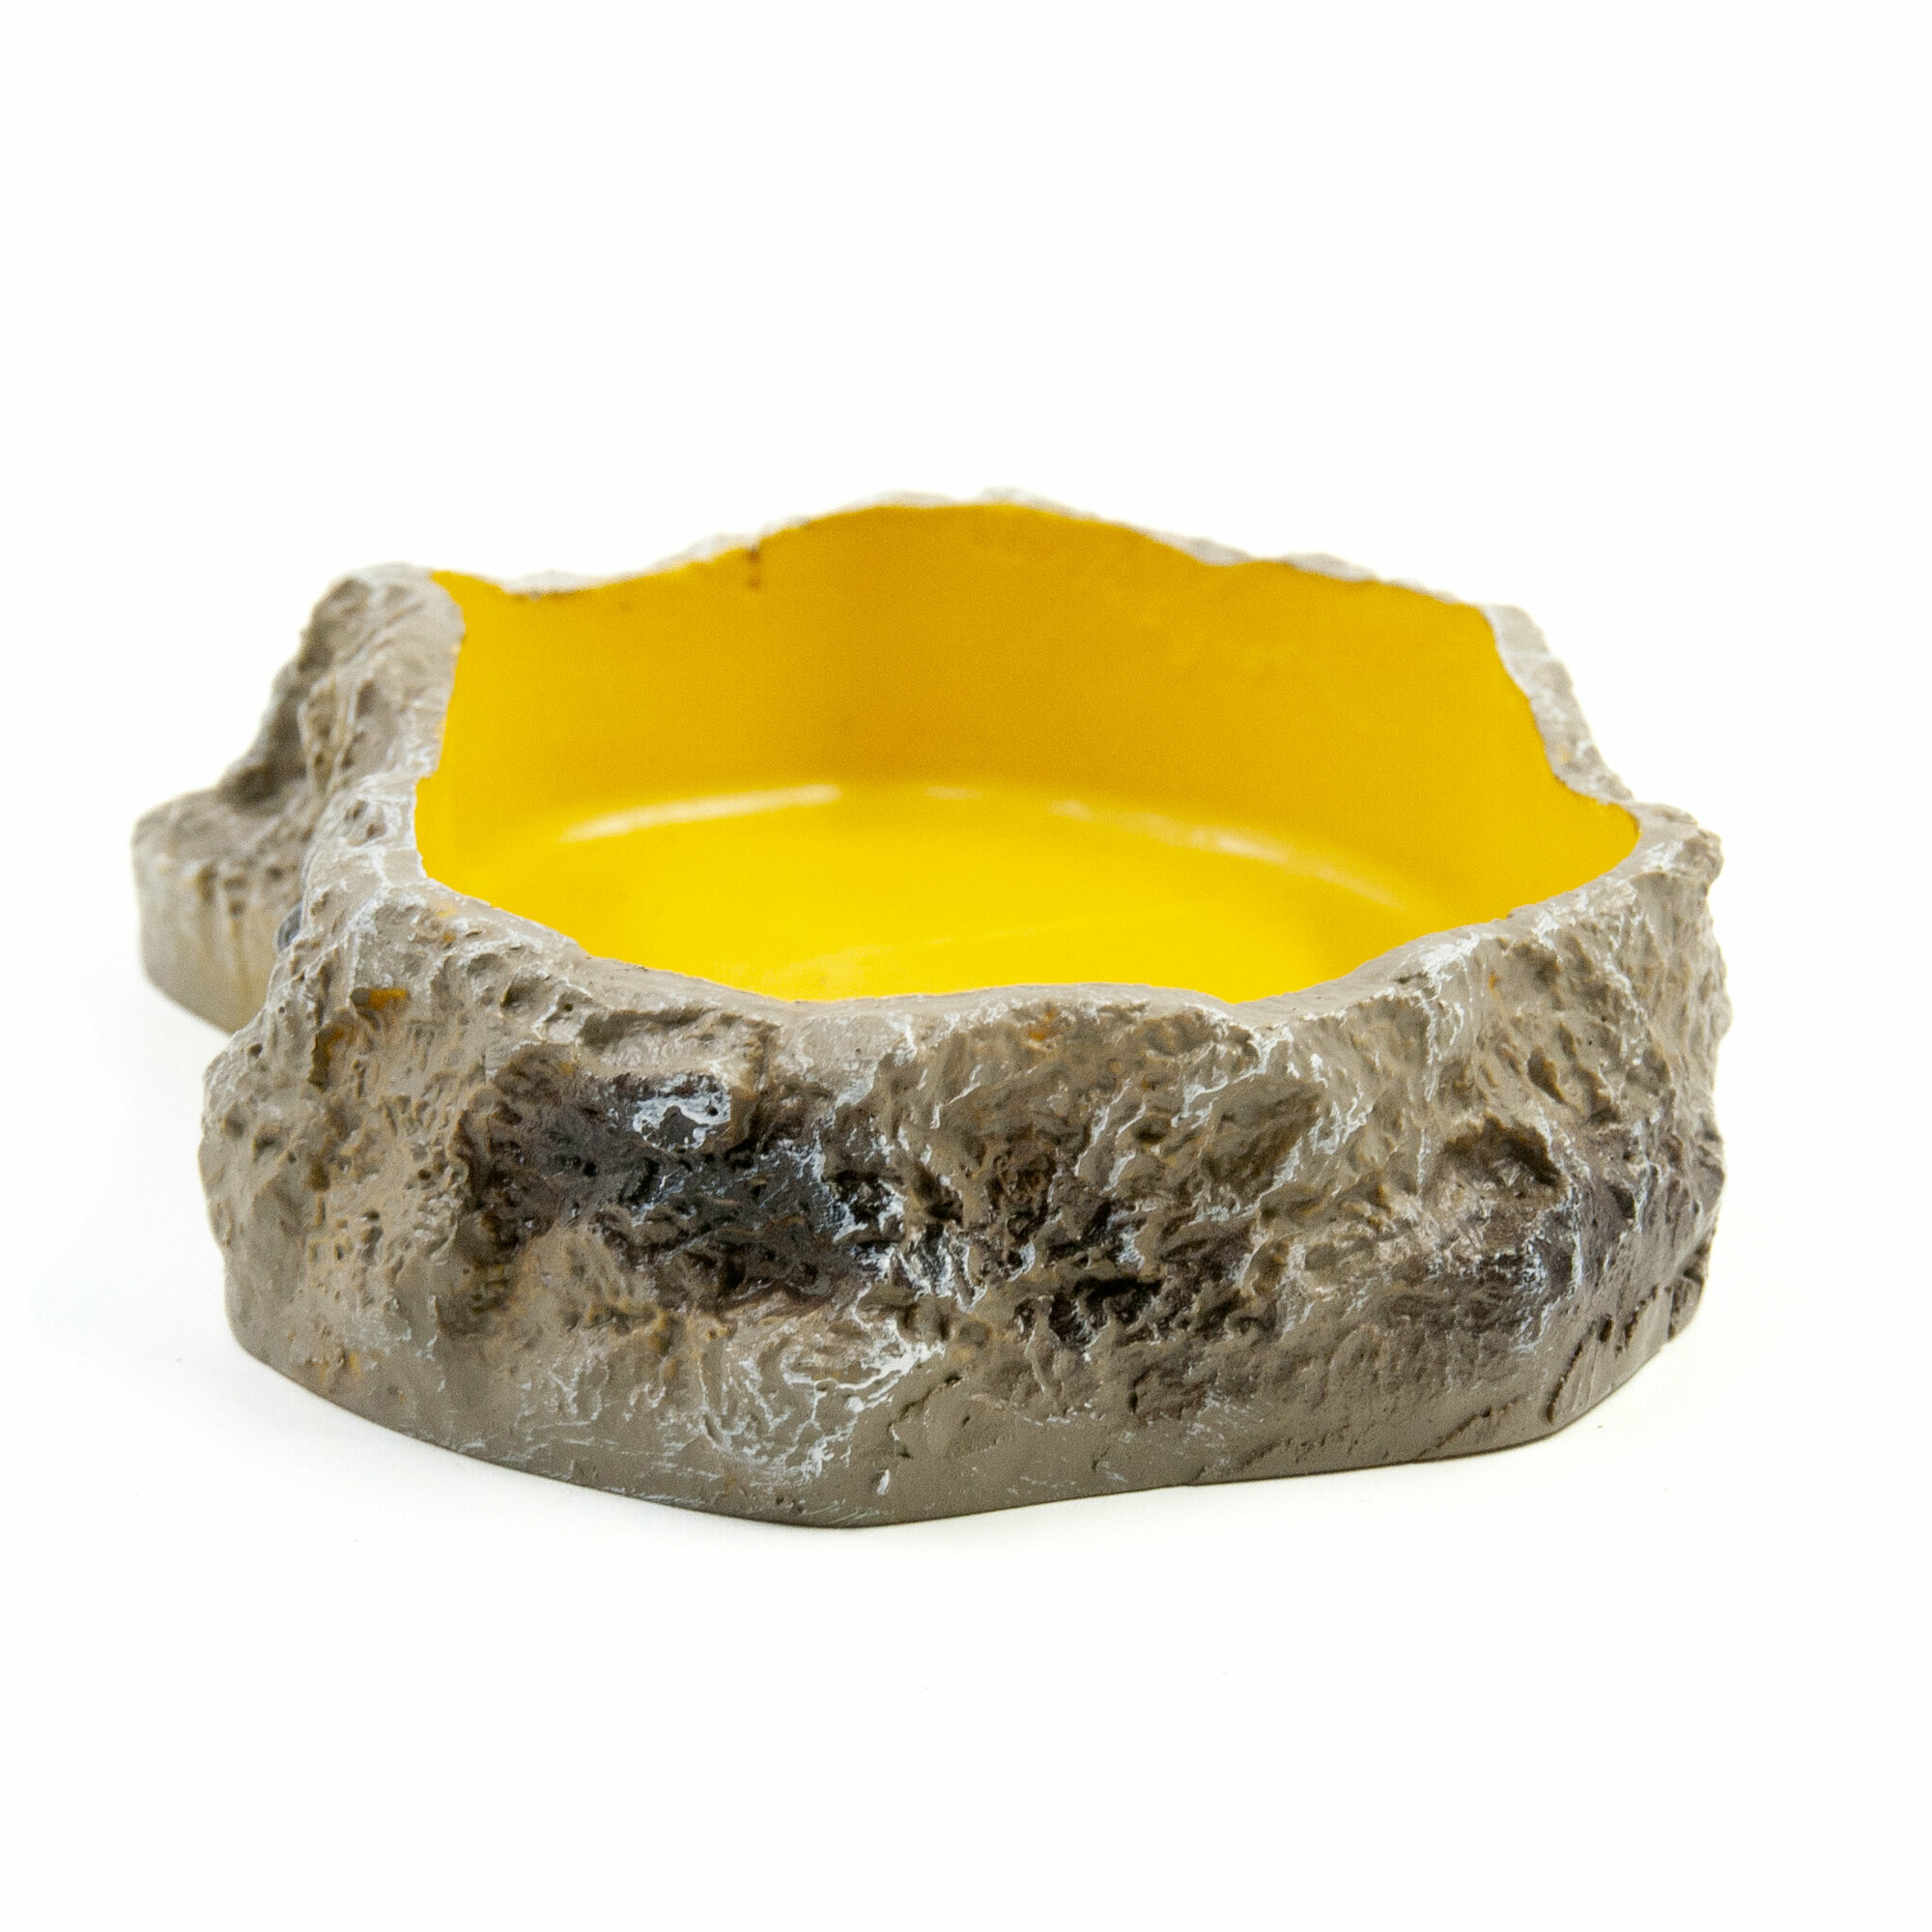 Поилка-кормушка для рептилий MCLANZOO "Bowls" камень/желтая, 13.3х8.5х3см